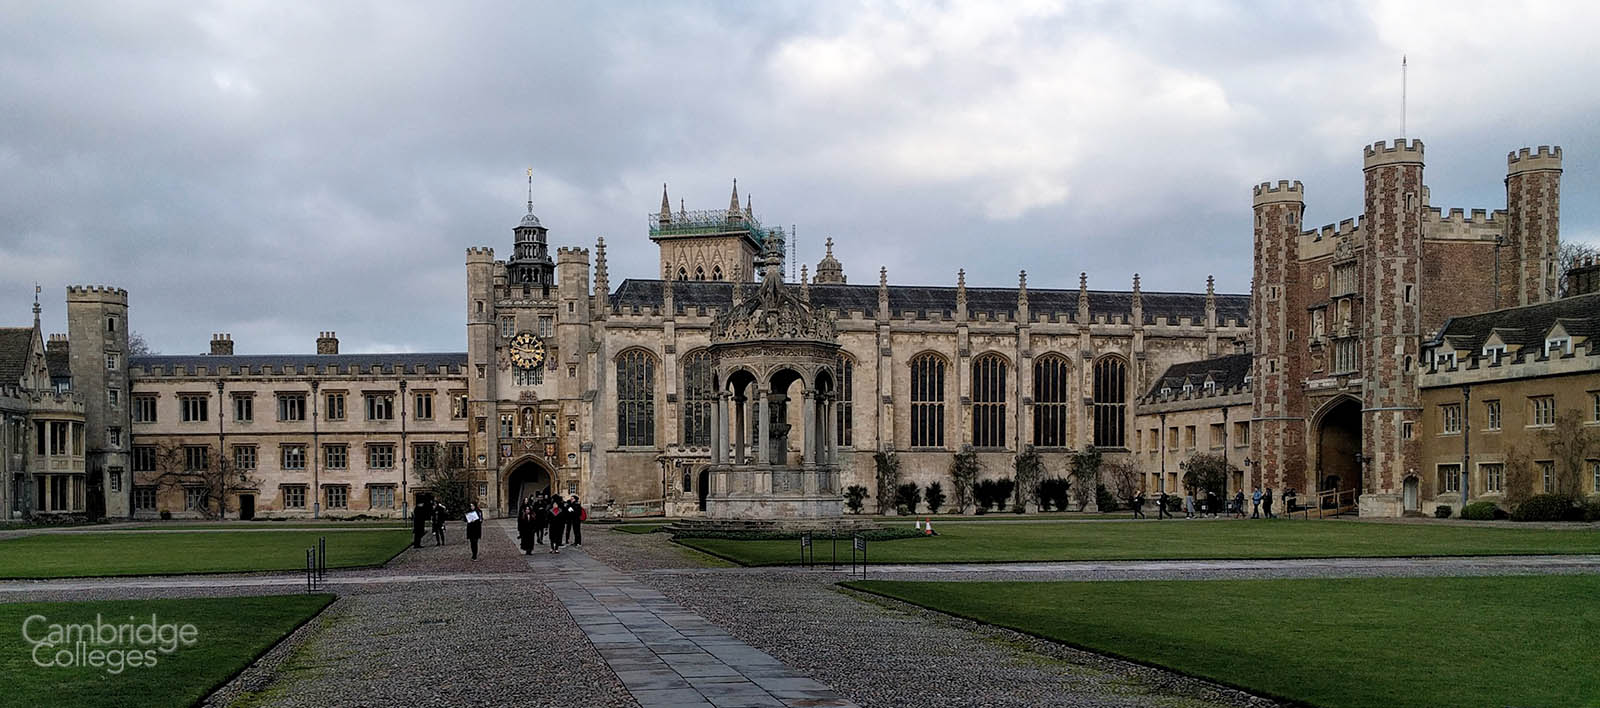 Trinity college, Cambridge's Great court